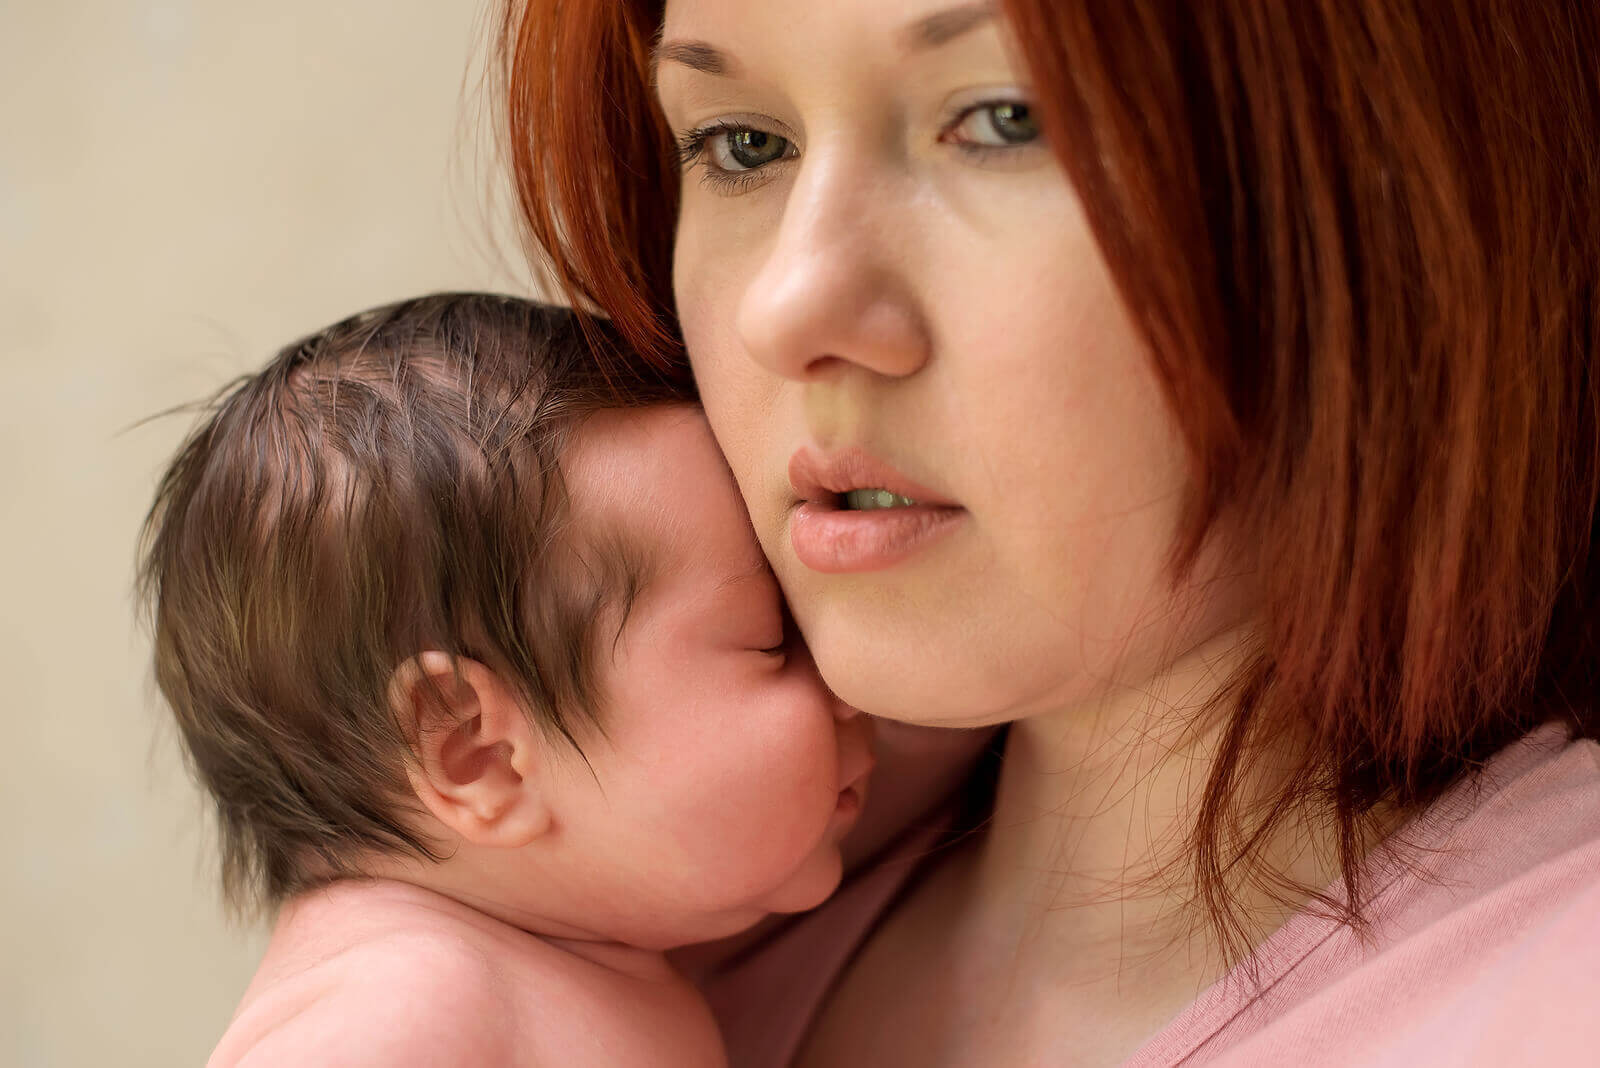 ångest efter förlossning: mamma håller nyfödd